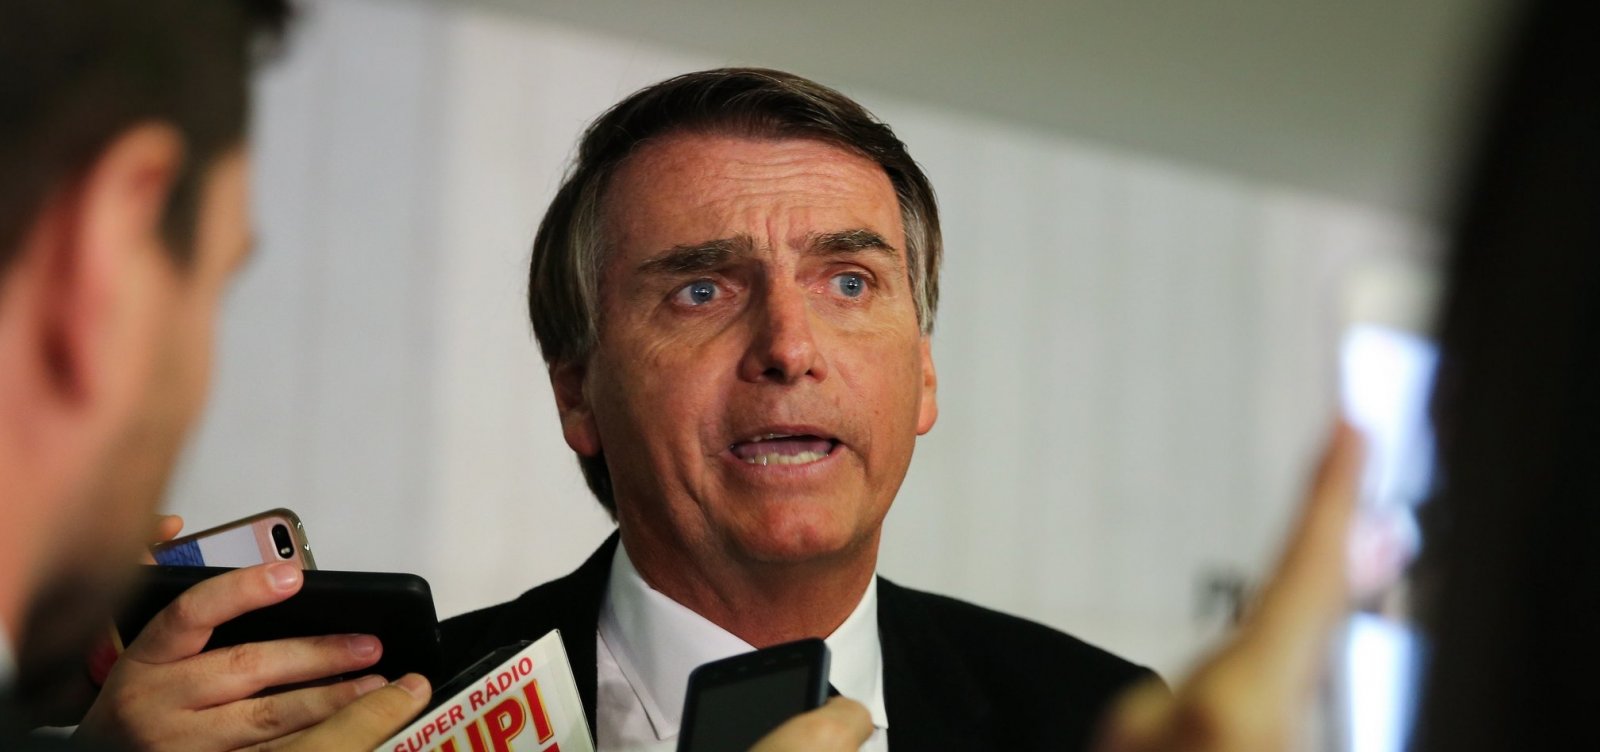 Impasse em coligações nos estados trava negociação de Bolsonaro com PR